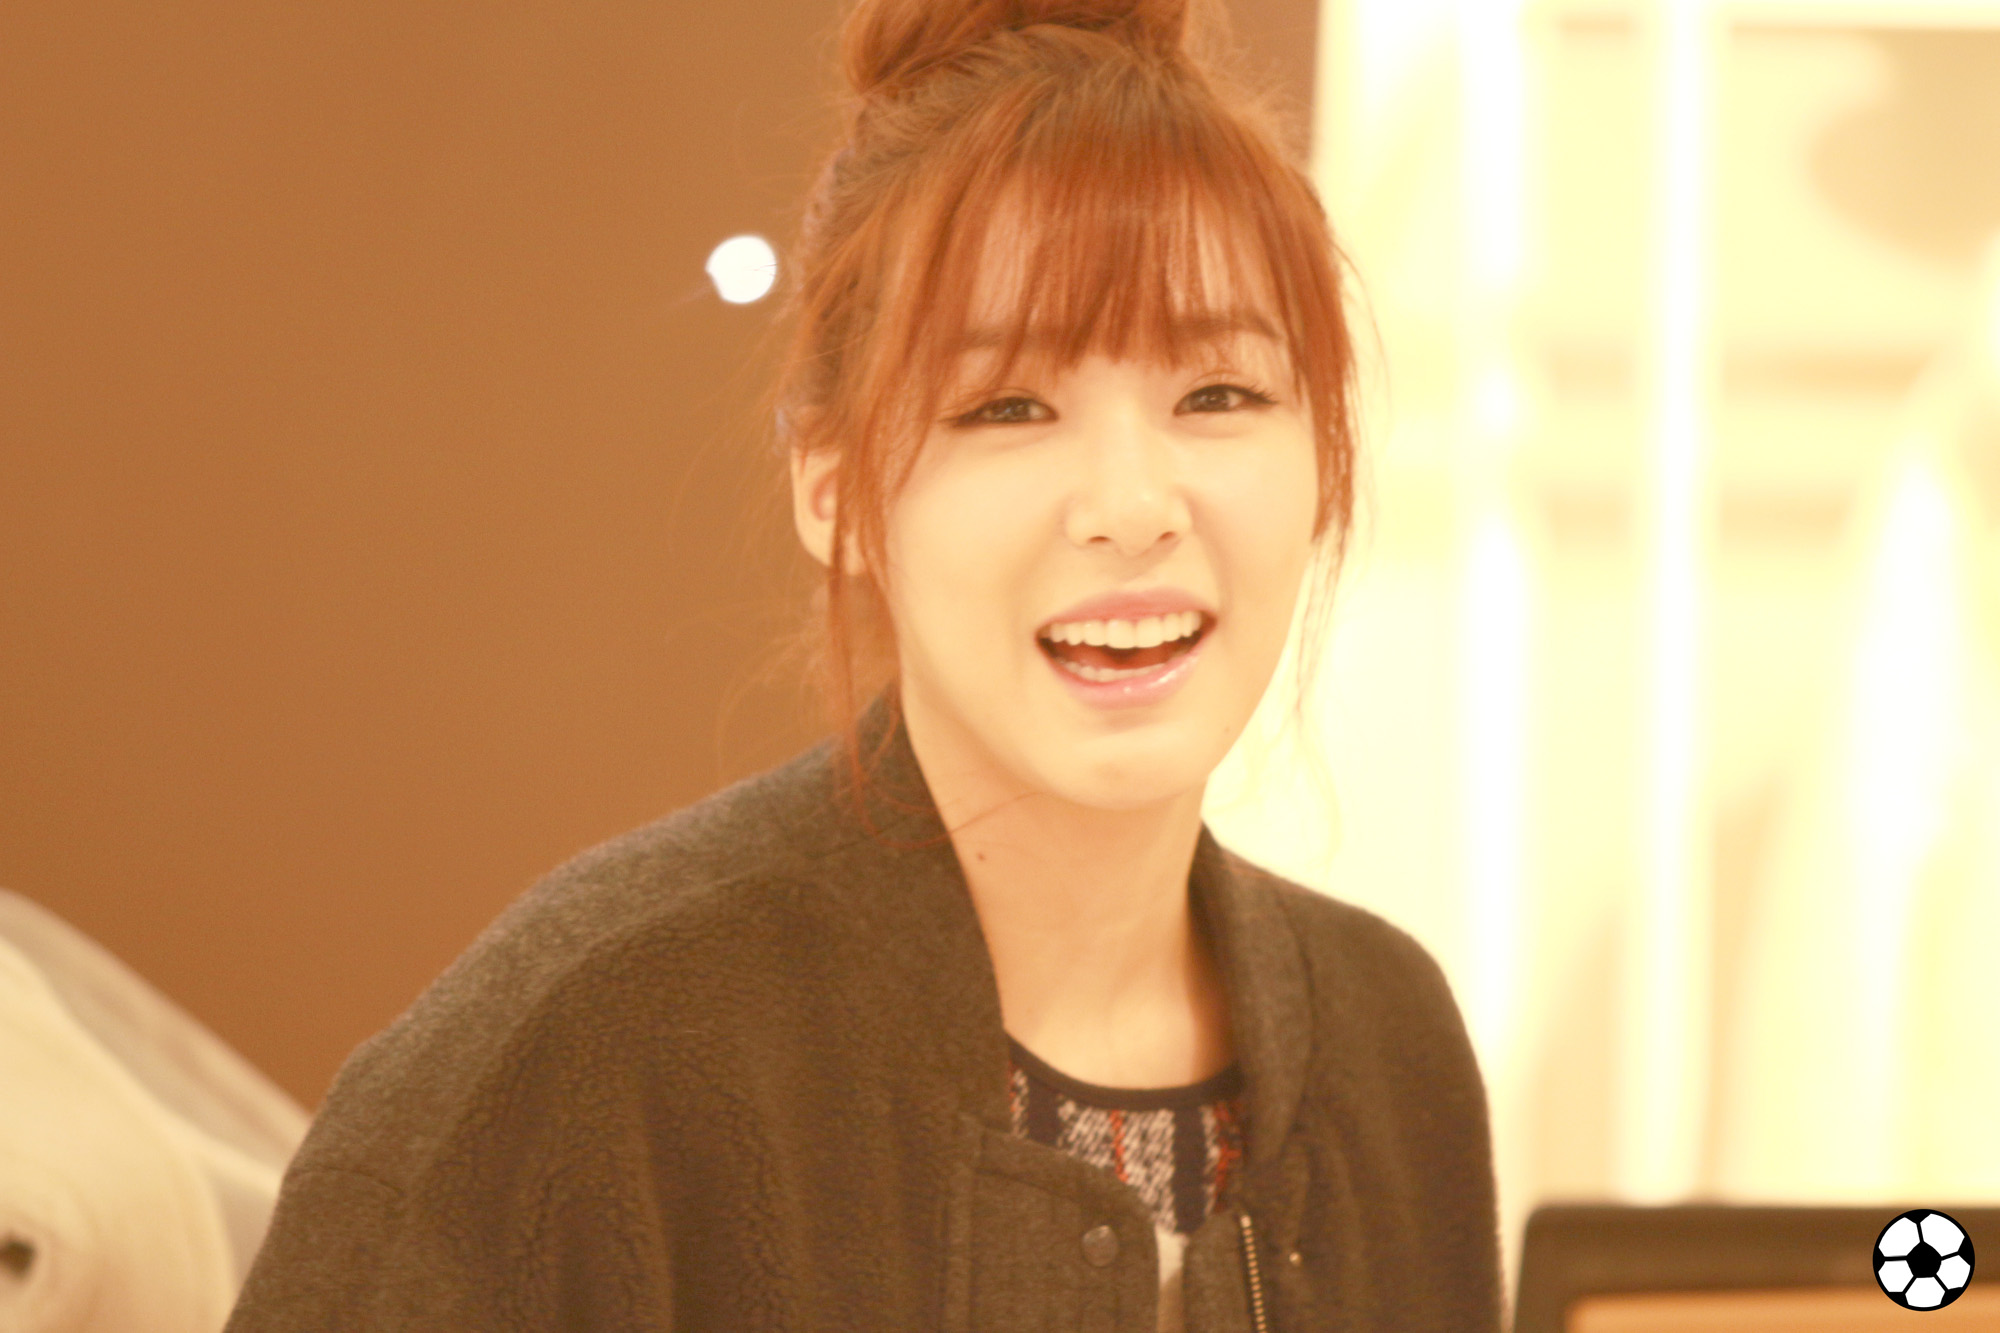 [PIC][28-11-2013]Tiffany ghé thăm cửa hàng "QUA" ở Hyundai Department Store vào trưa nay - Page 3 26410D4F5298BA6809C352